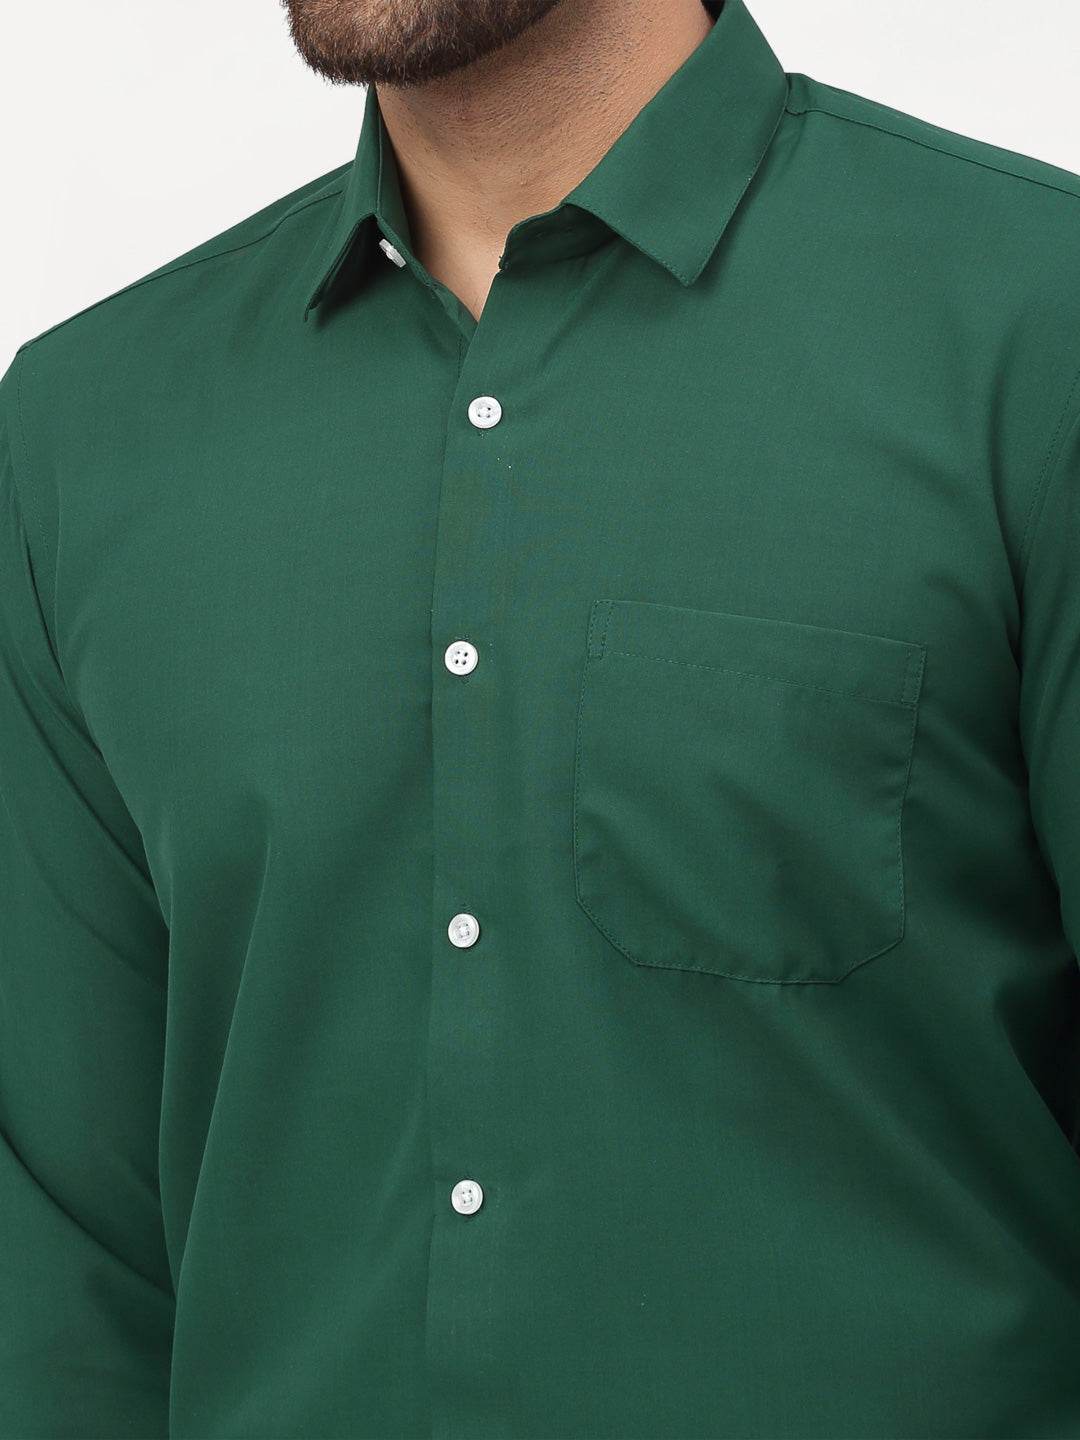 Jainish Olive Men's Solid Formal Shirts